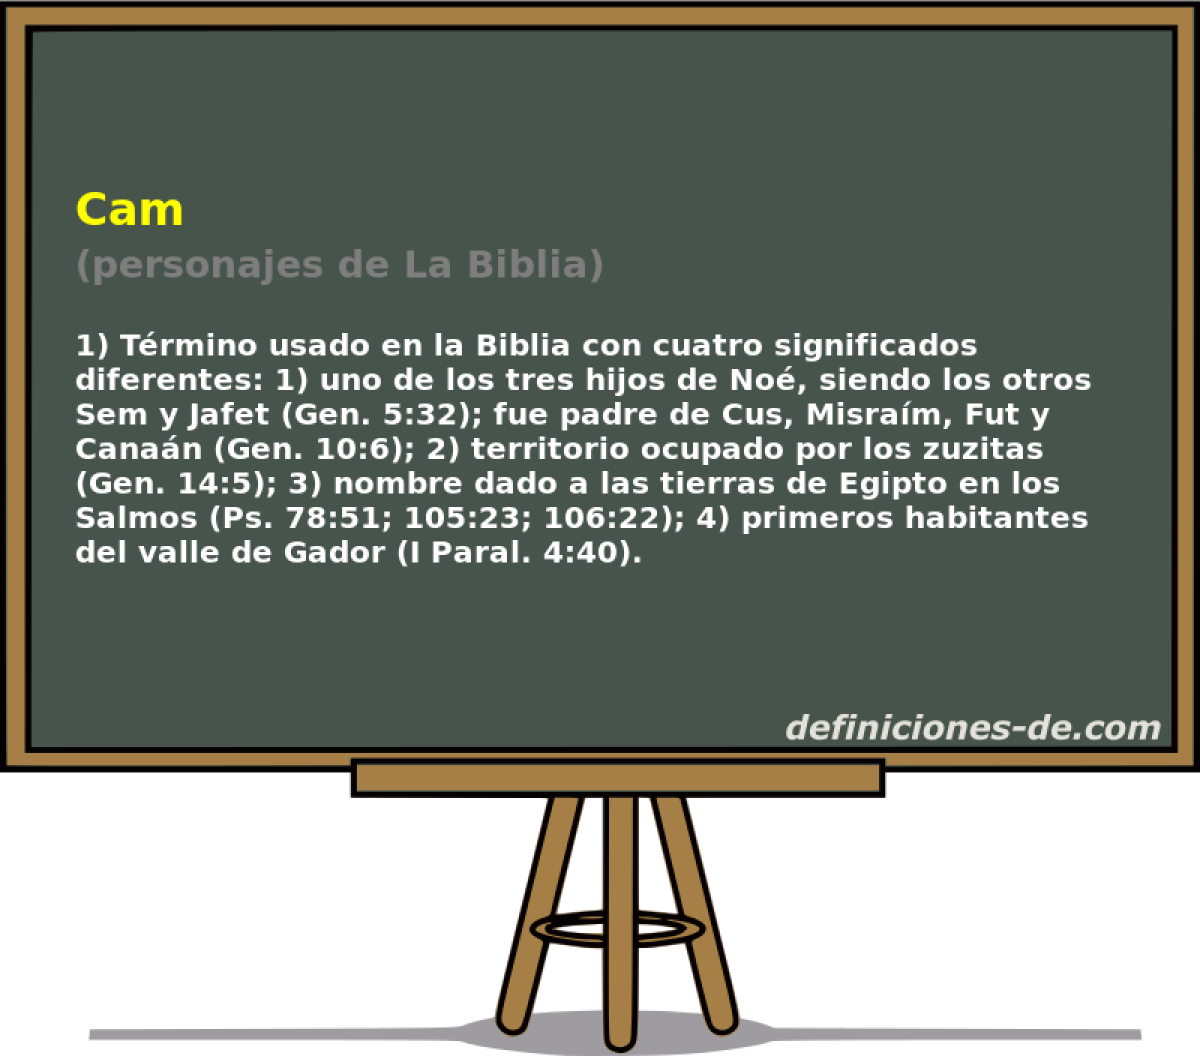 Cam (personajes de La Biblia)